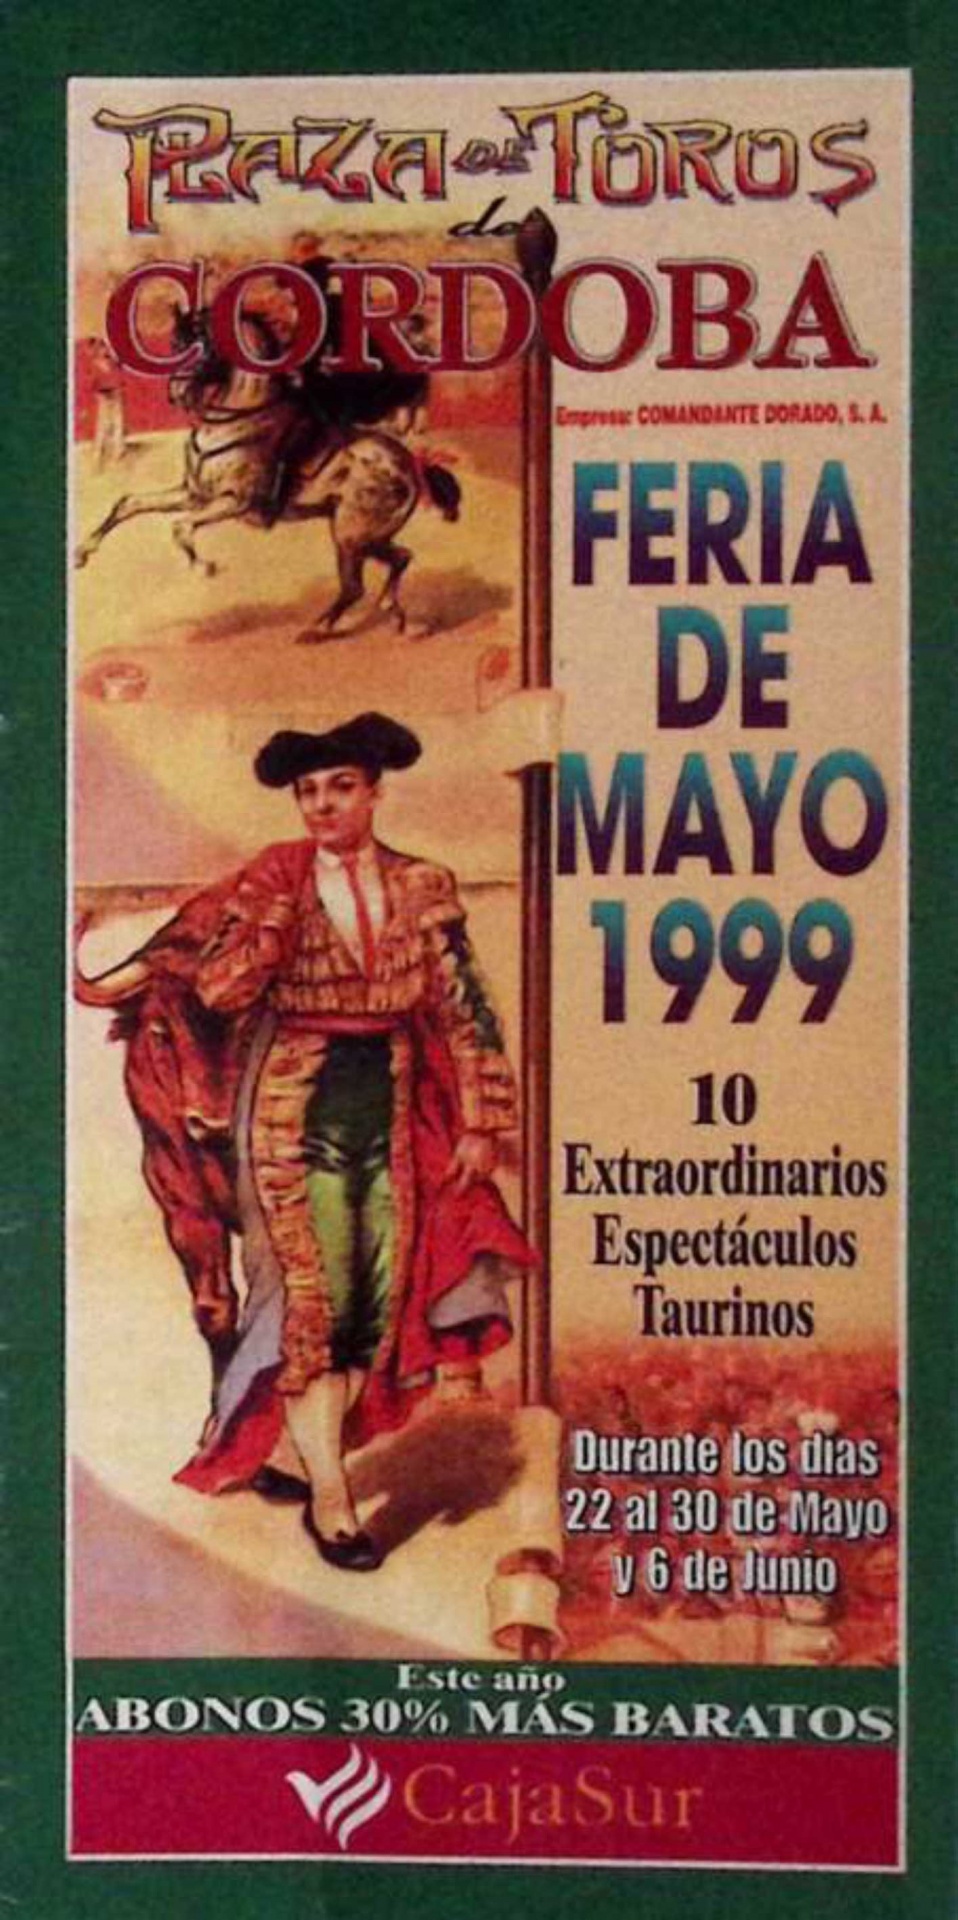 Feria de Mayo 1999. Plaza de Toros de Córdoba